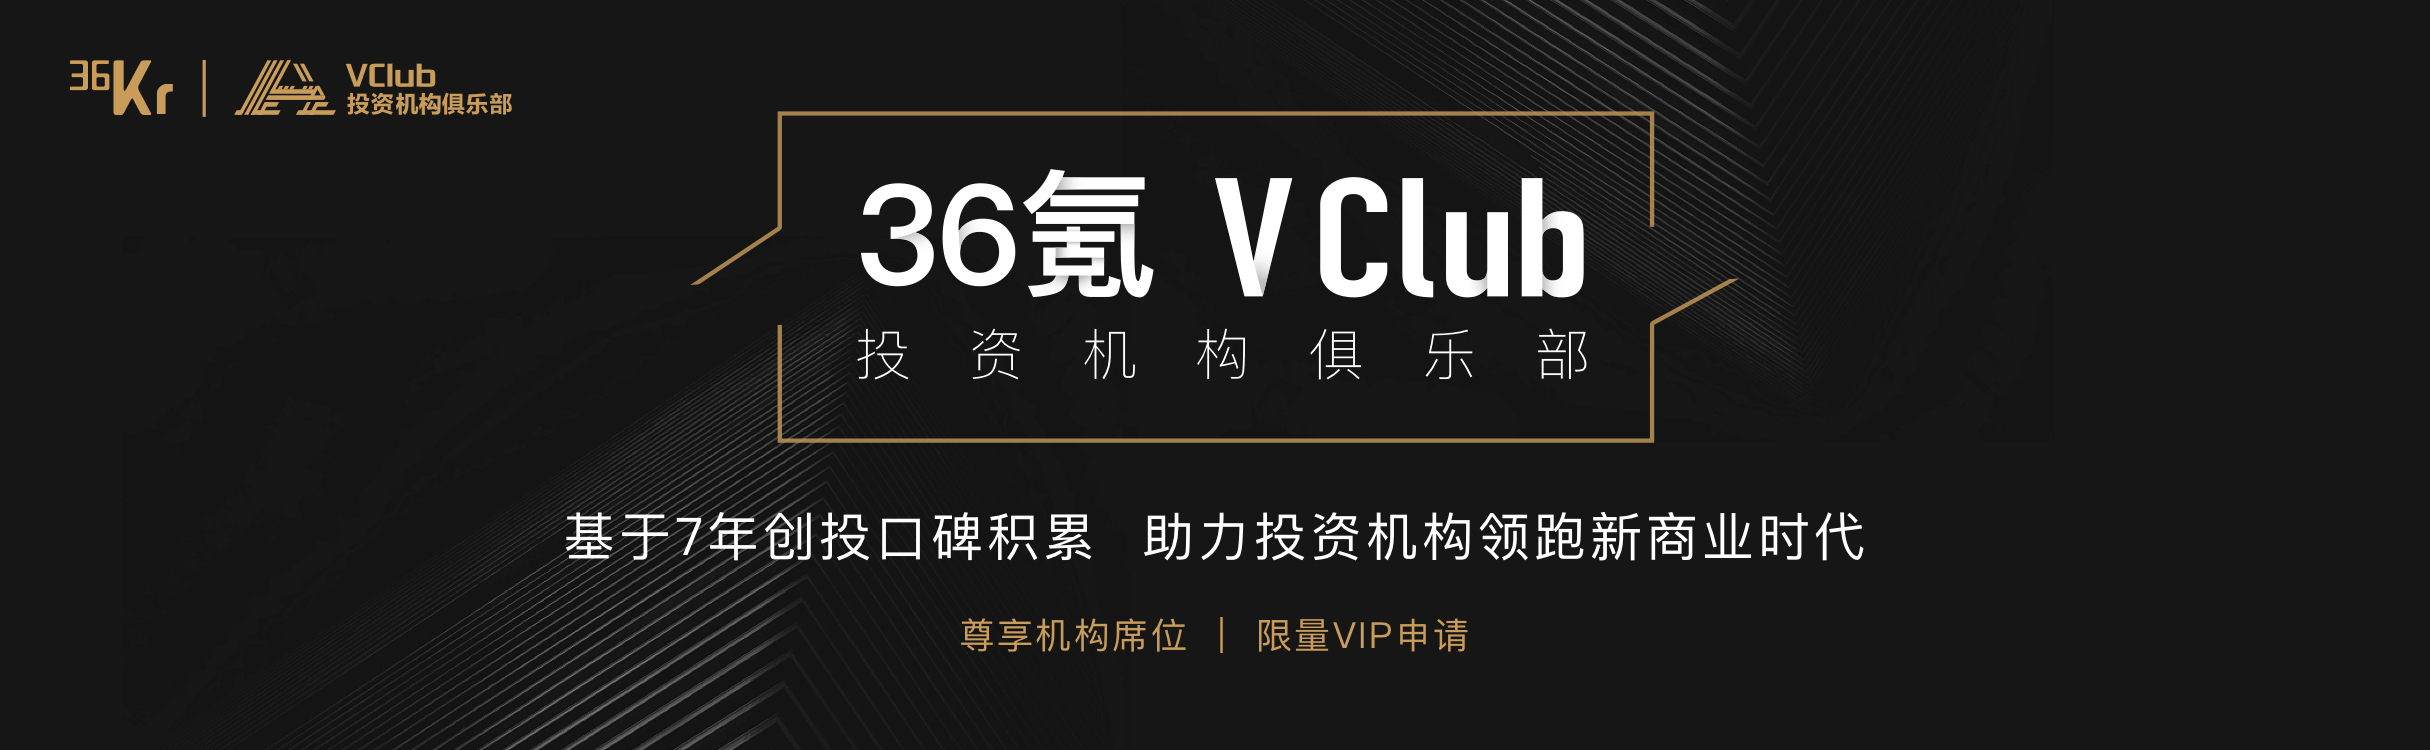 36氪正式启动“VClub”投资机构俱乐部，携手优秀资本迈入新商业时代